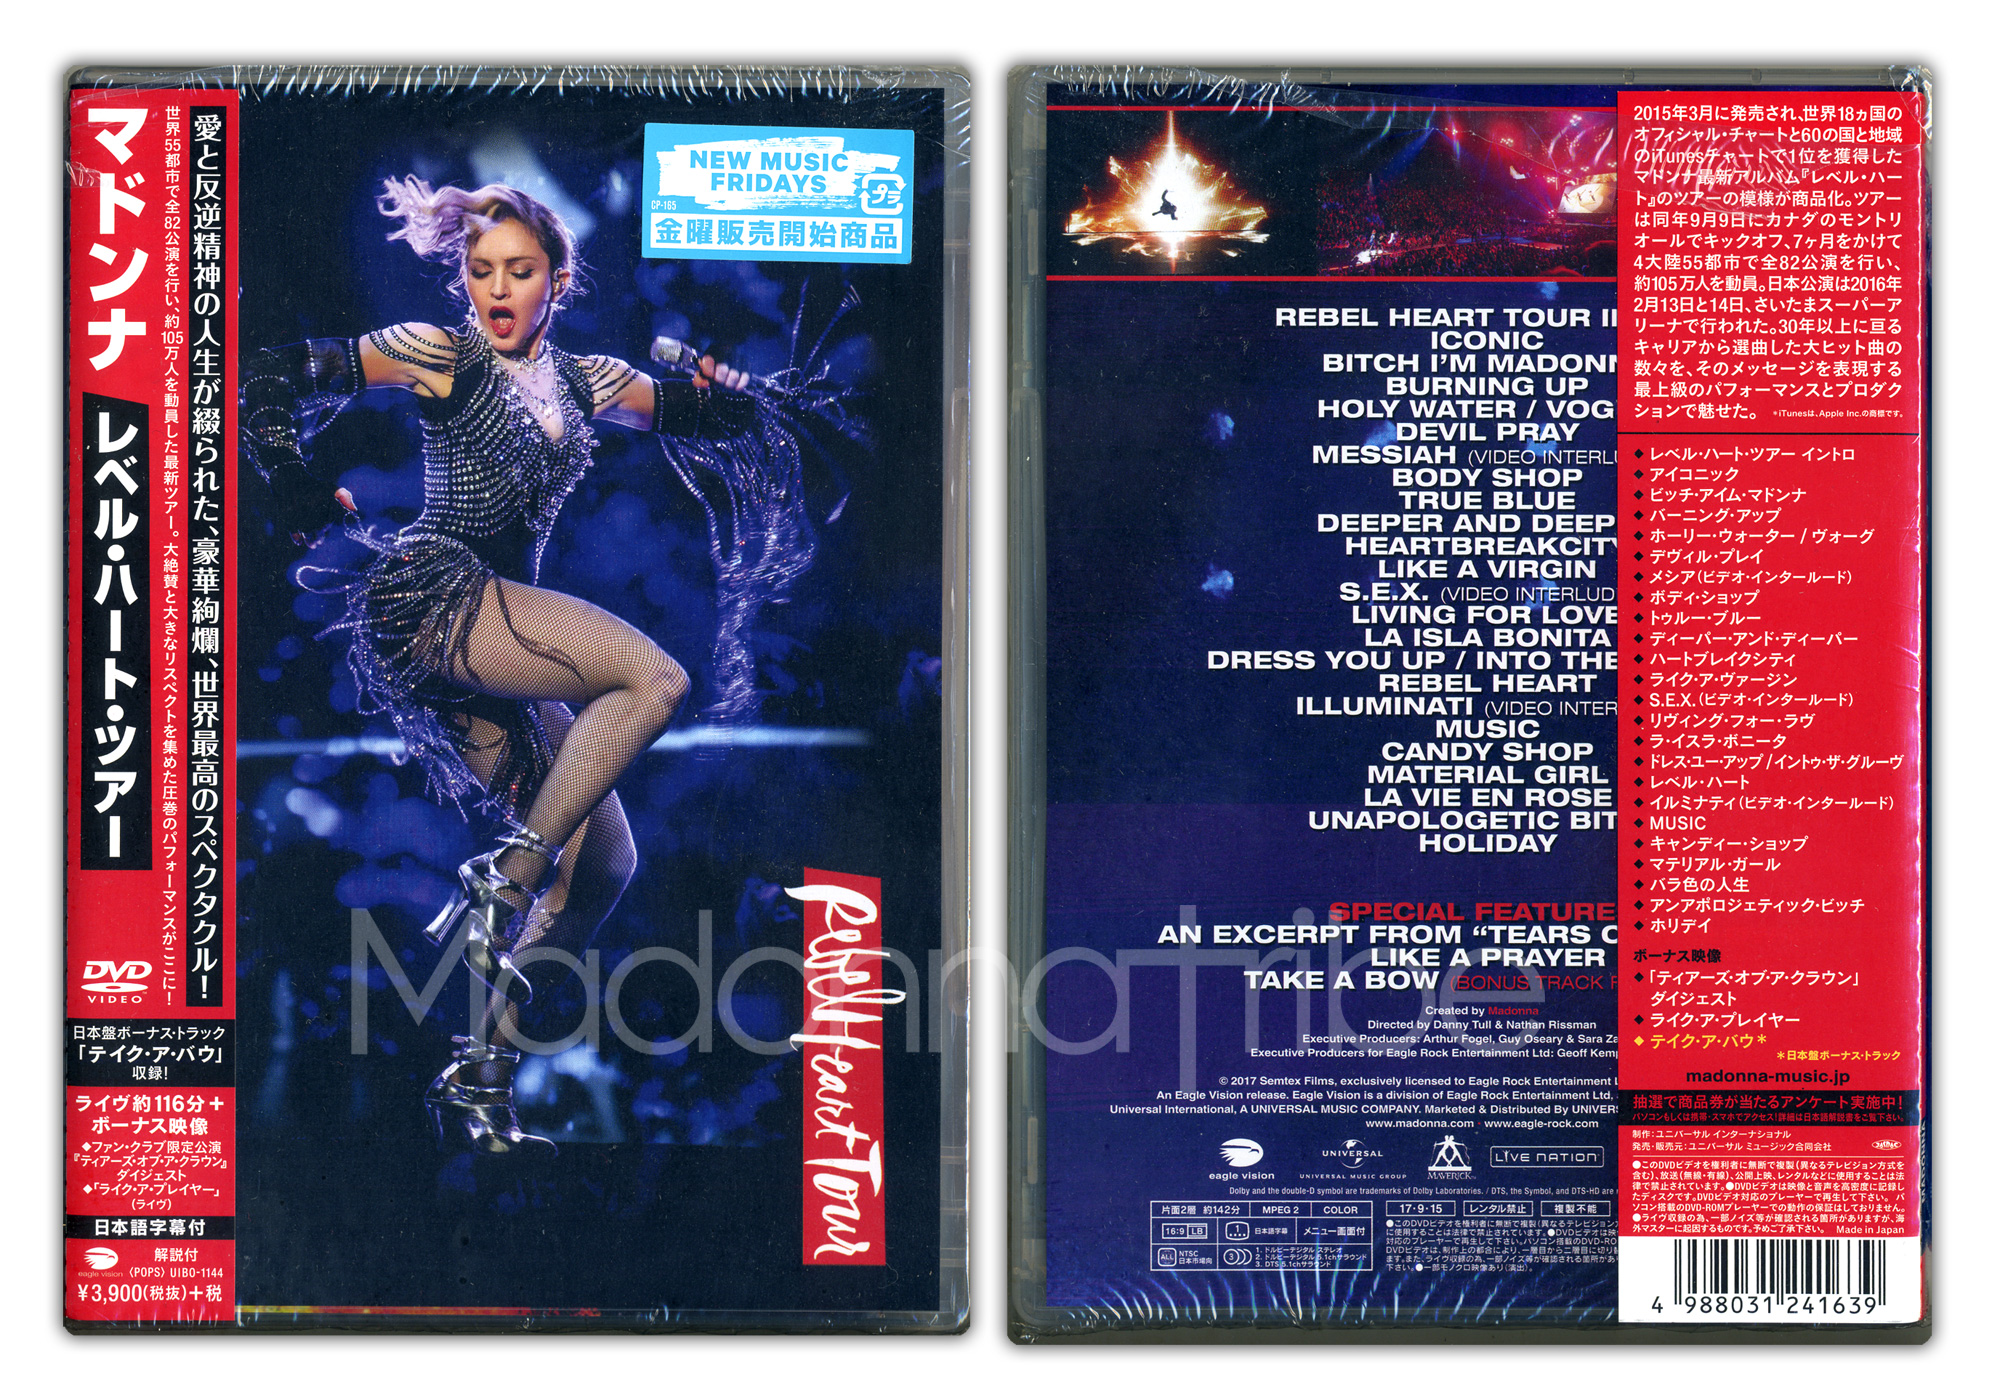 Rebel Heart Tour Japanese DVD